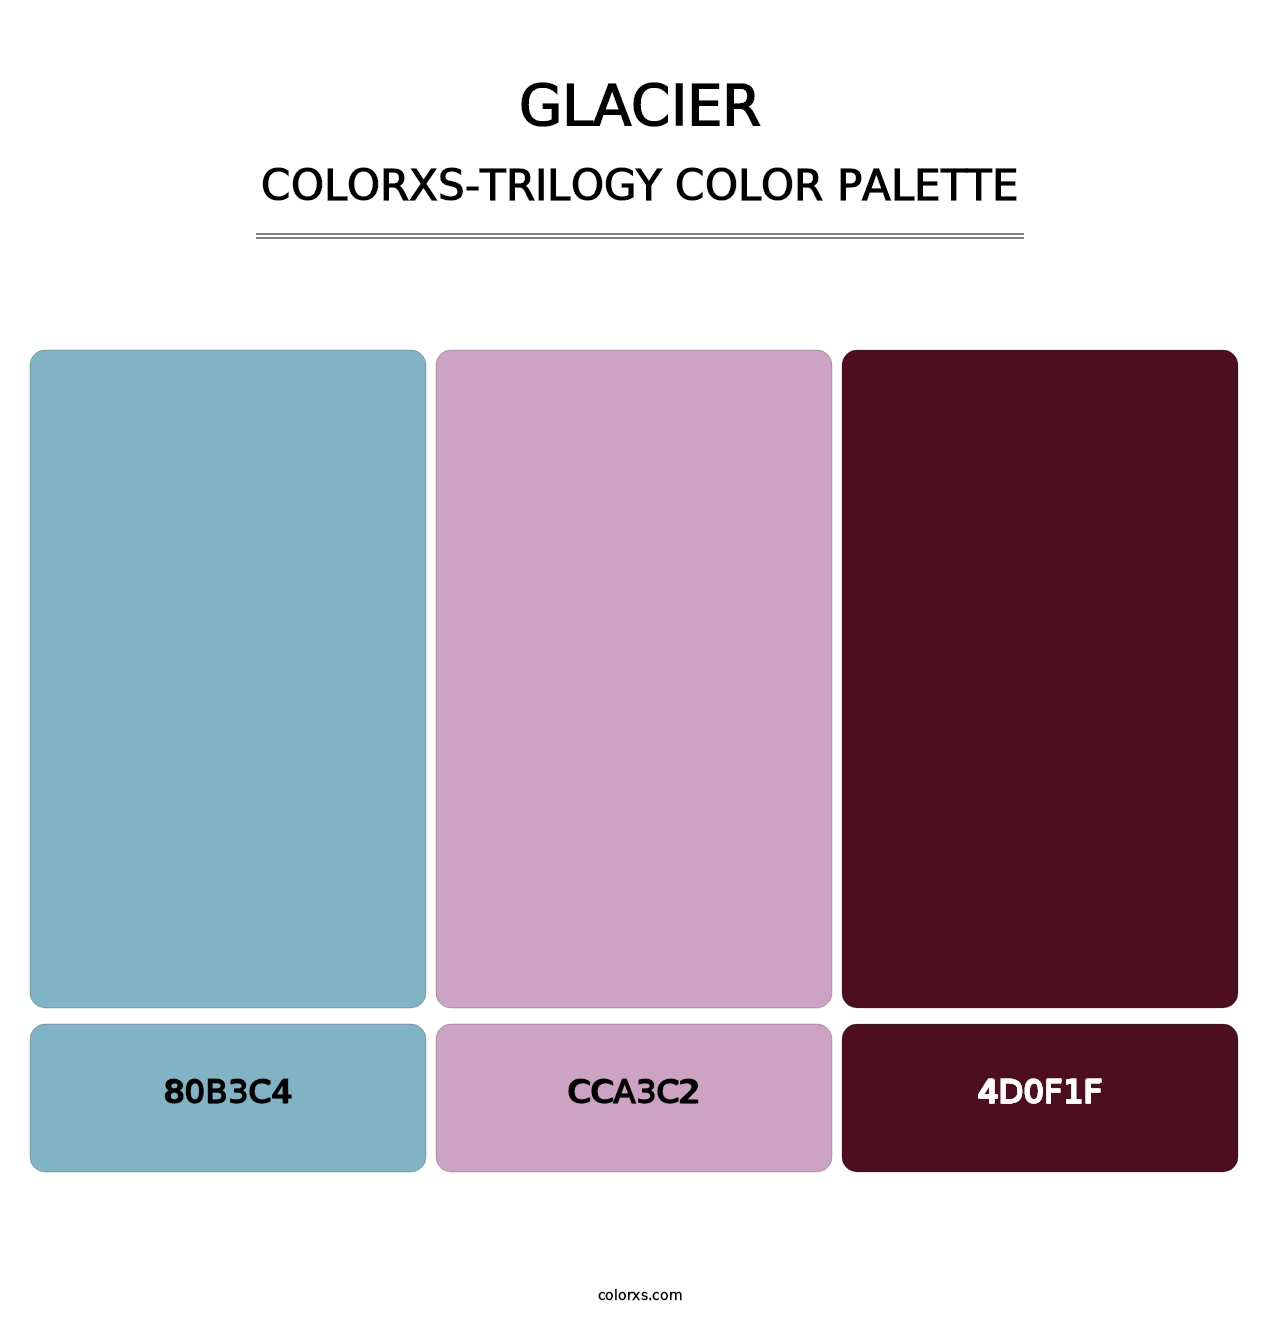 Glacier - Colorxs Trilogy Palette